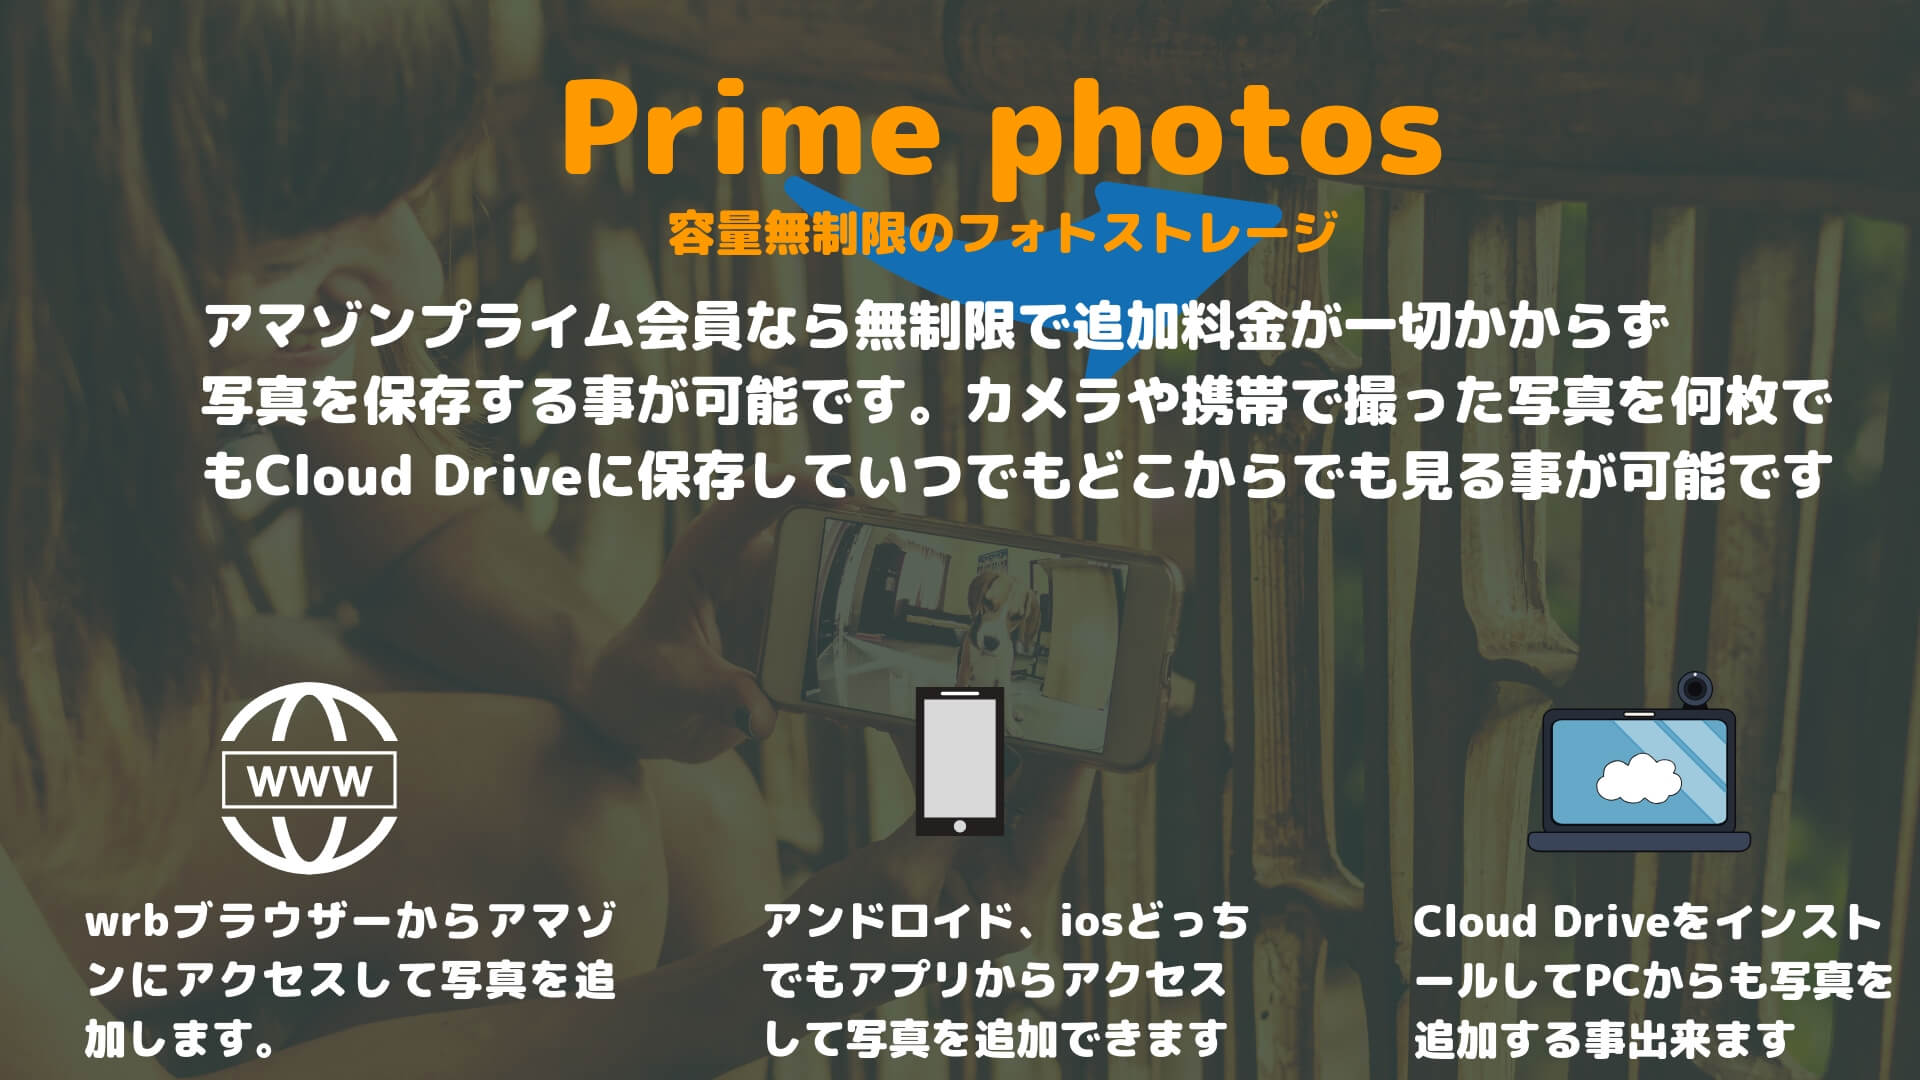 Prime Photos